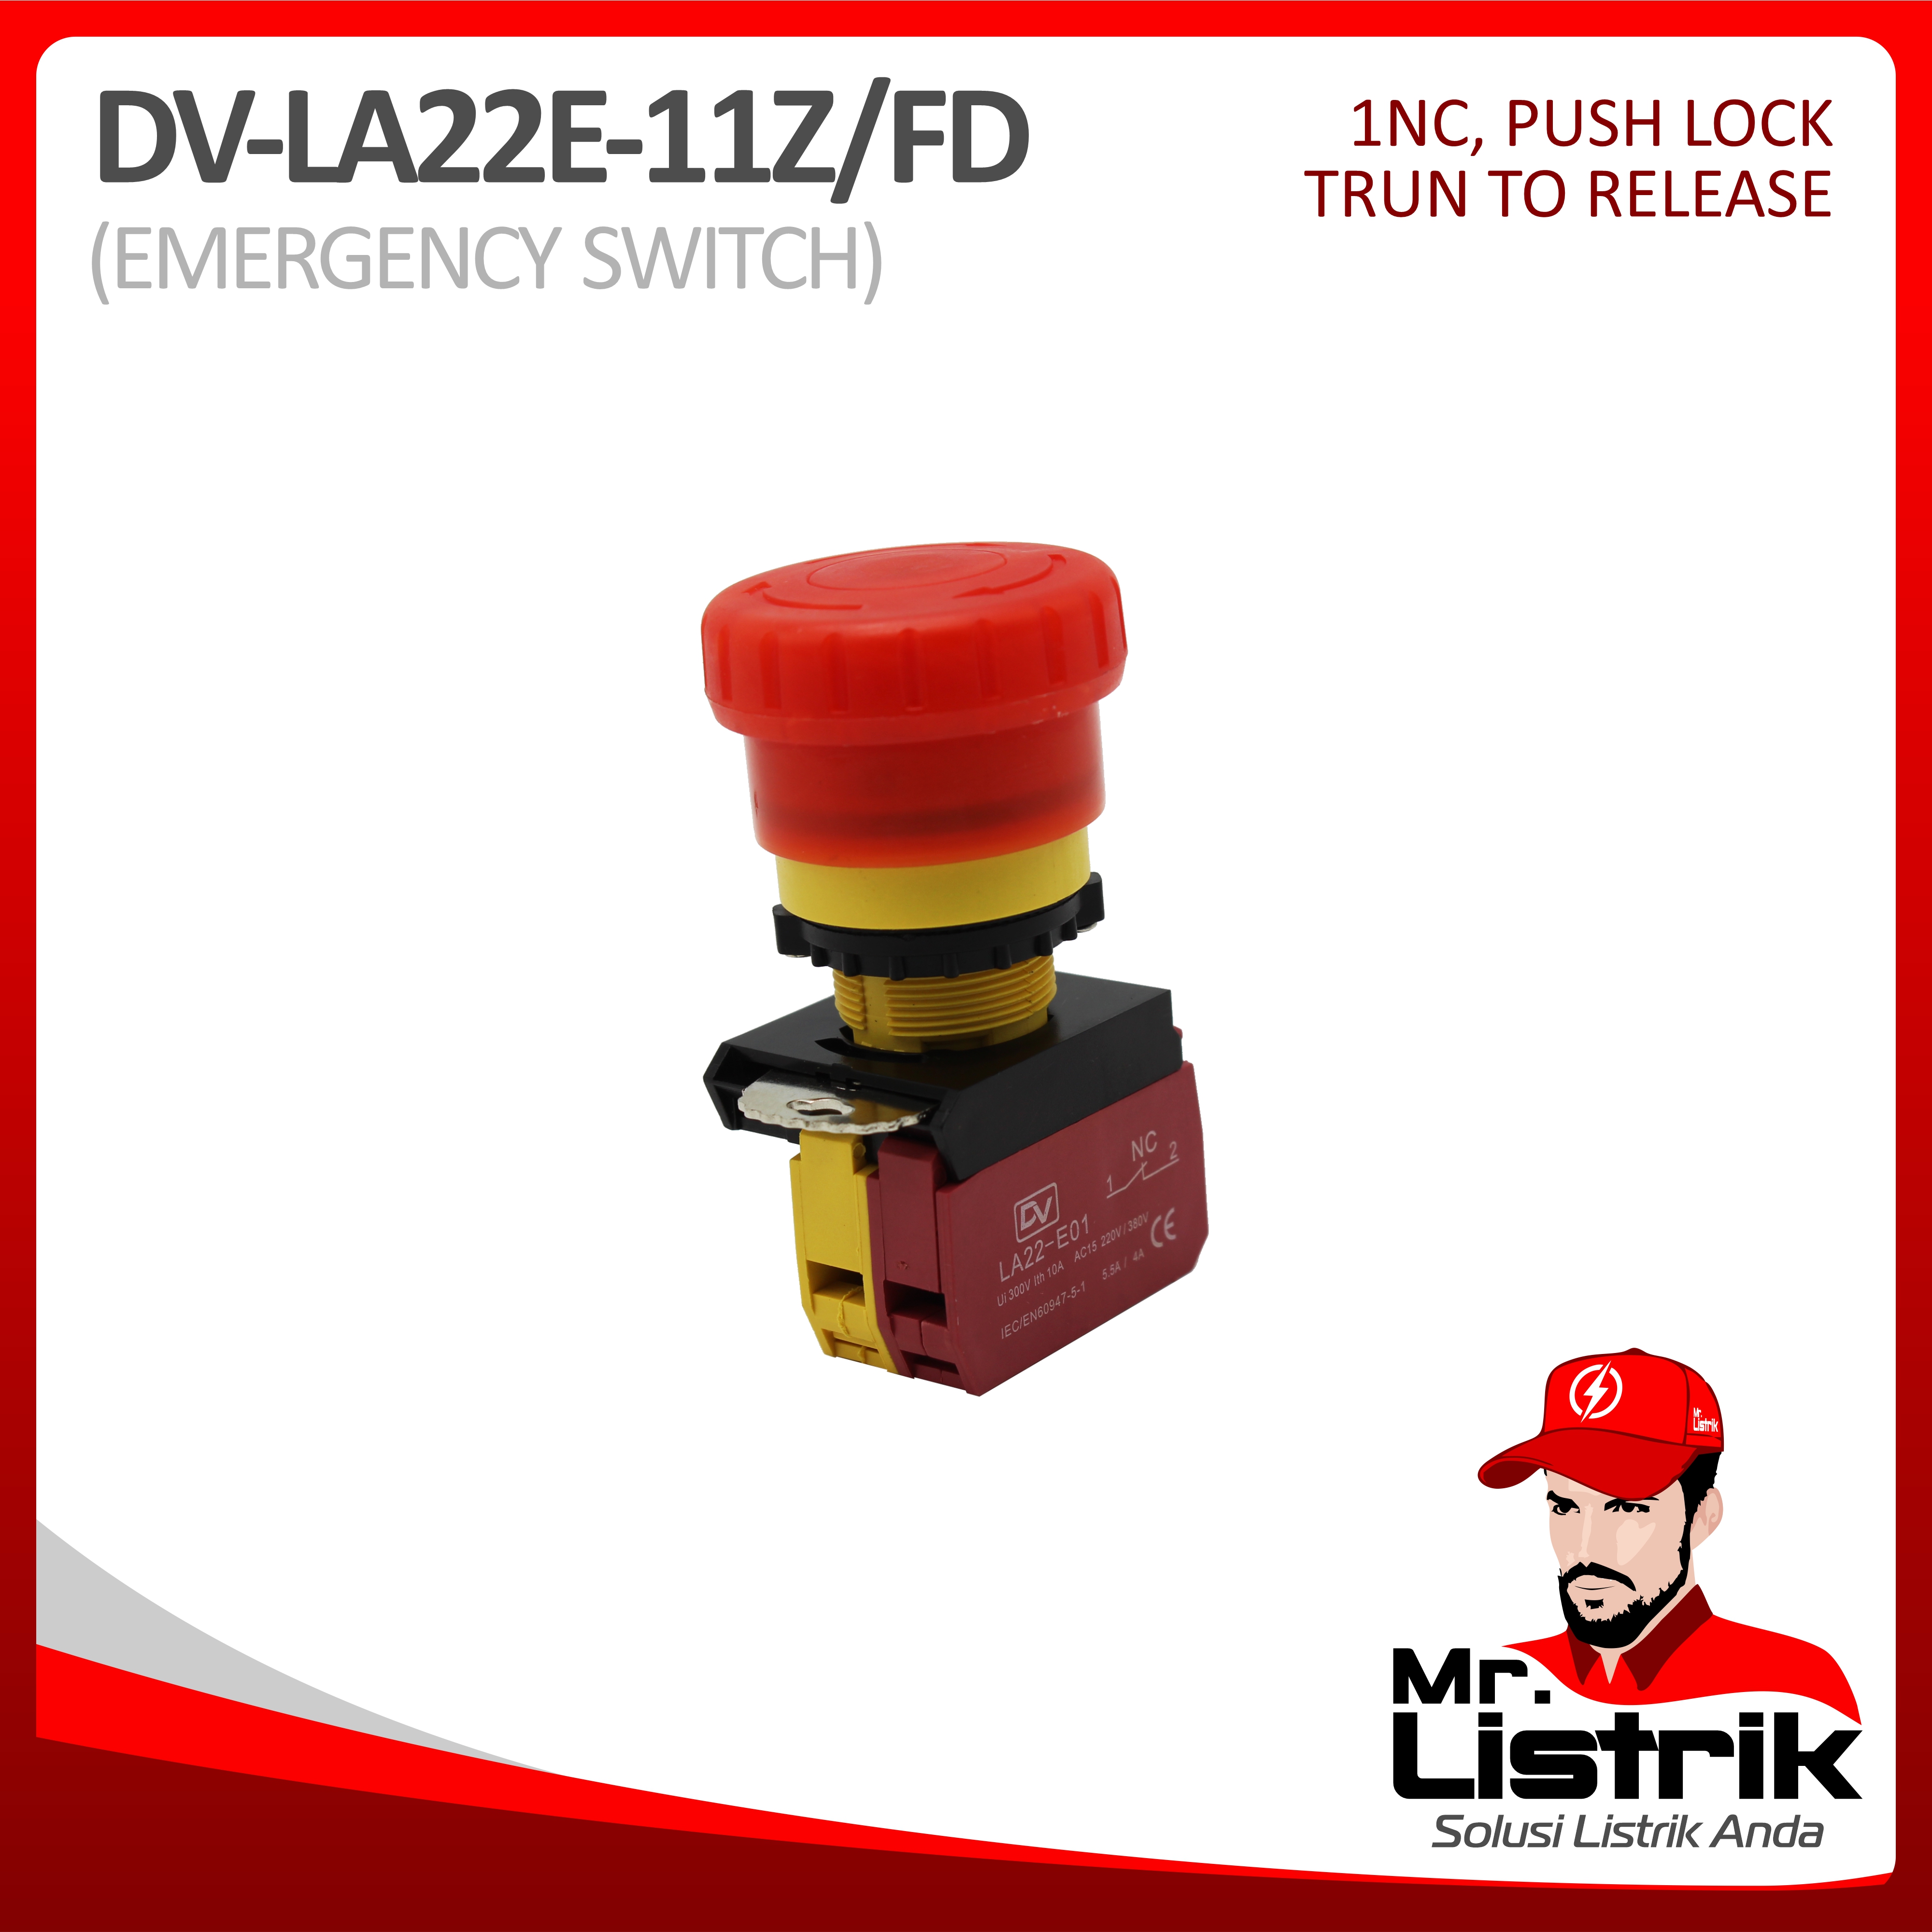 Emergency Stop LED 1NC Waterproof Modular LA22E-11Z/FD - Push Lock Turn To Release